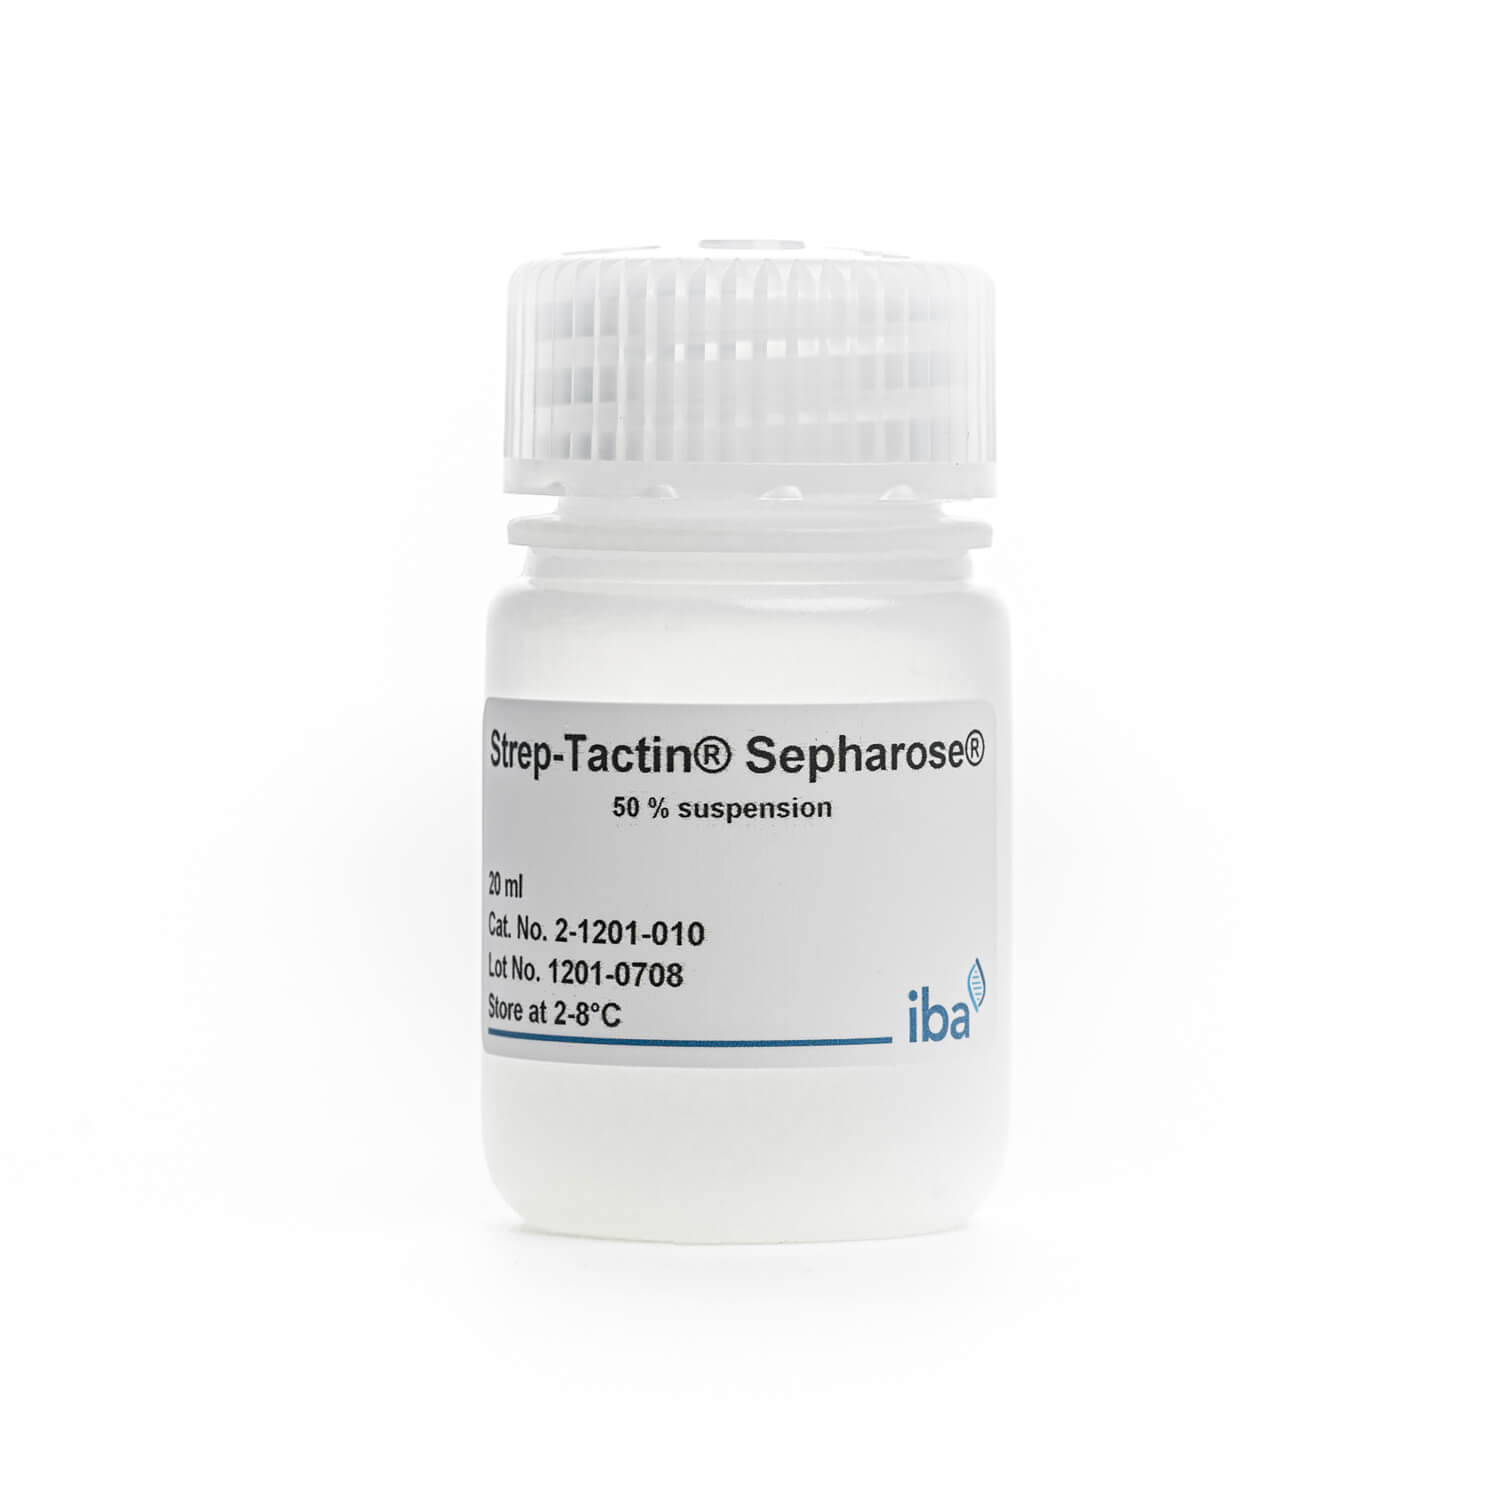 Strep-Tactin® Sepharose® resin